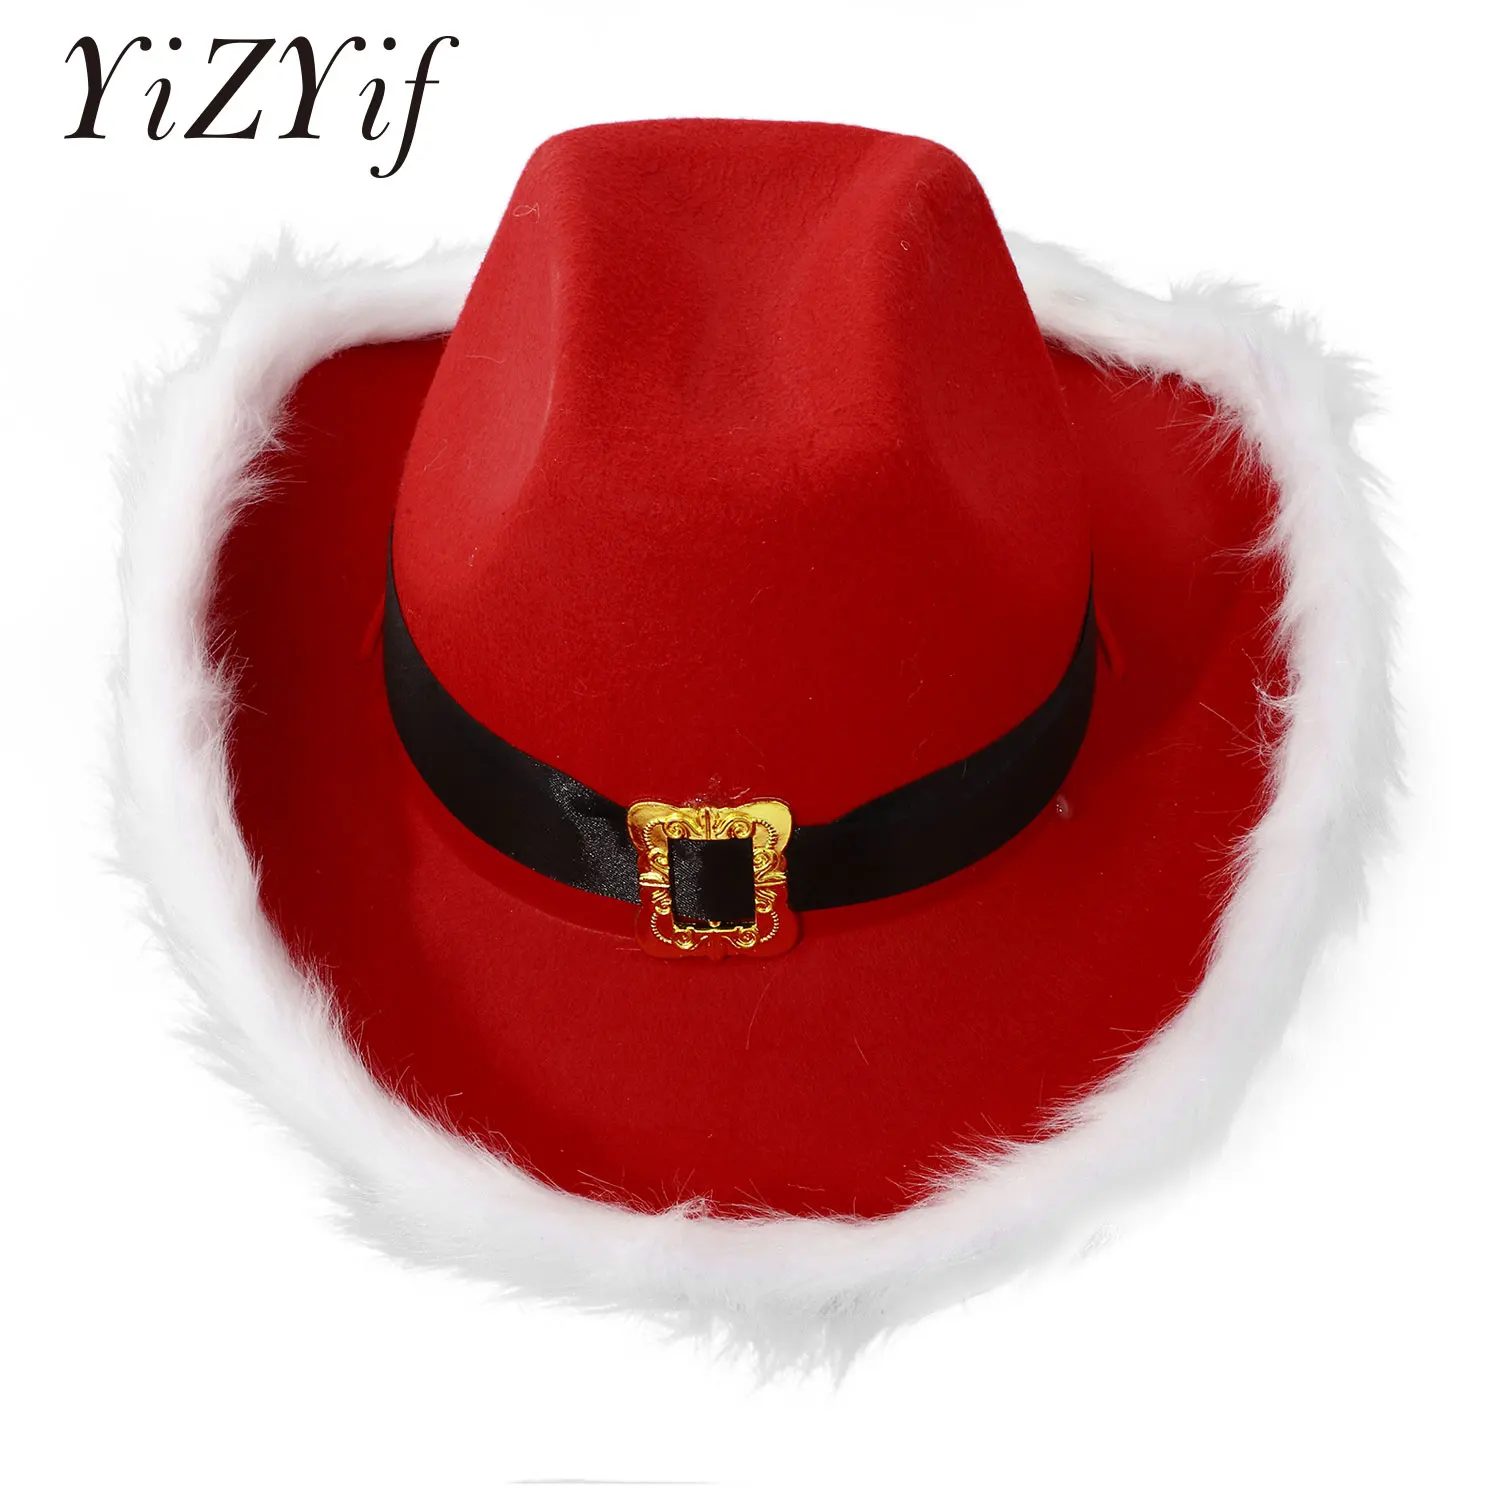 

Красные пушистые шапки Санта-Клауса, Женская рождественская черная ковбойская шляпа с ремешком и перьями, шляпа Санта-Клауса с фетровыми краями, украшение для рождественской и новогодней вечеринки, шляпа Санта-Клауса